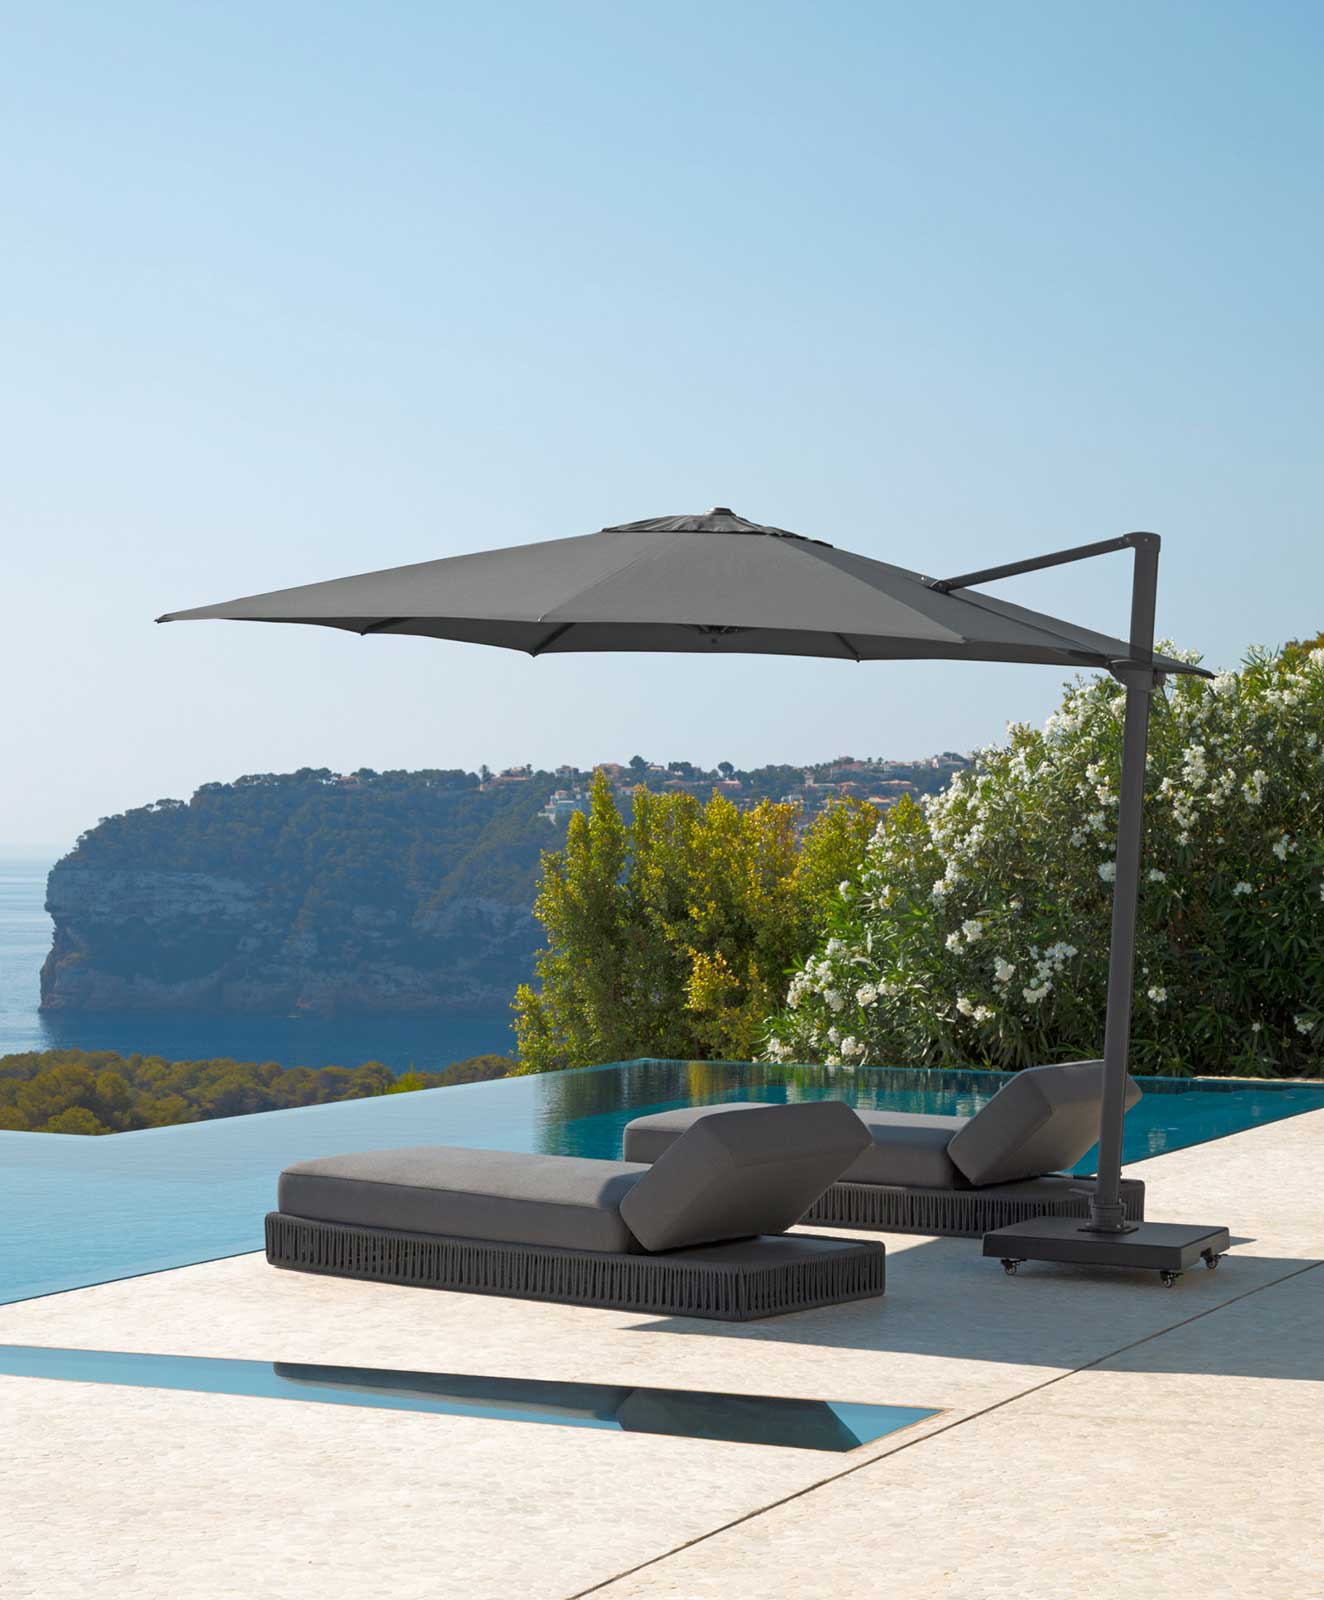 Ombrellone design di lusso con piede decentrato 3x3. Acquista mobili da esterno per giardini e terrazze di alto livello con consegna gratuita.